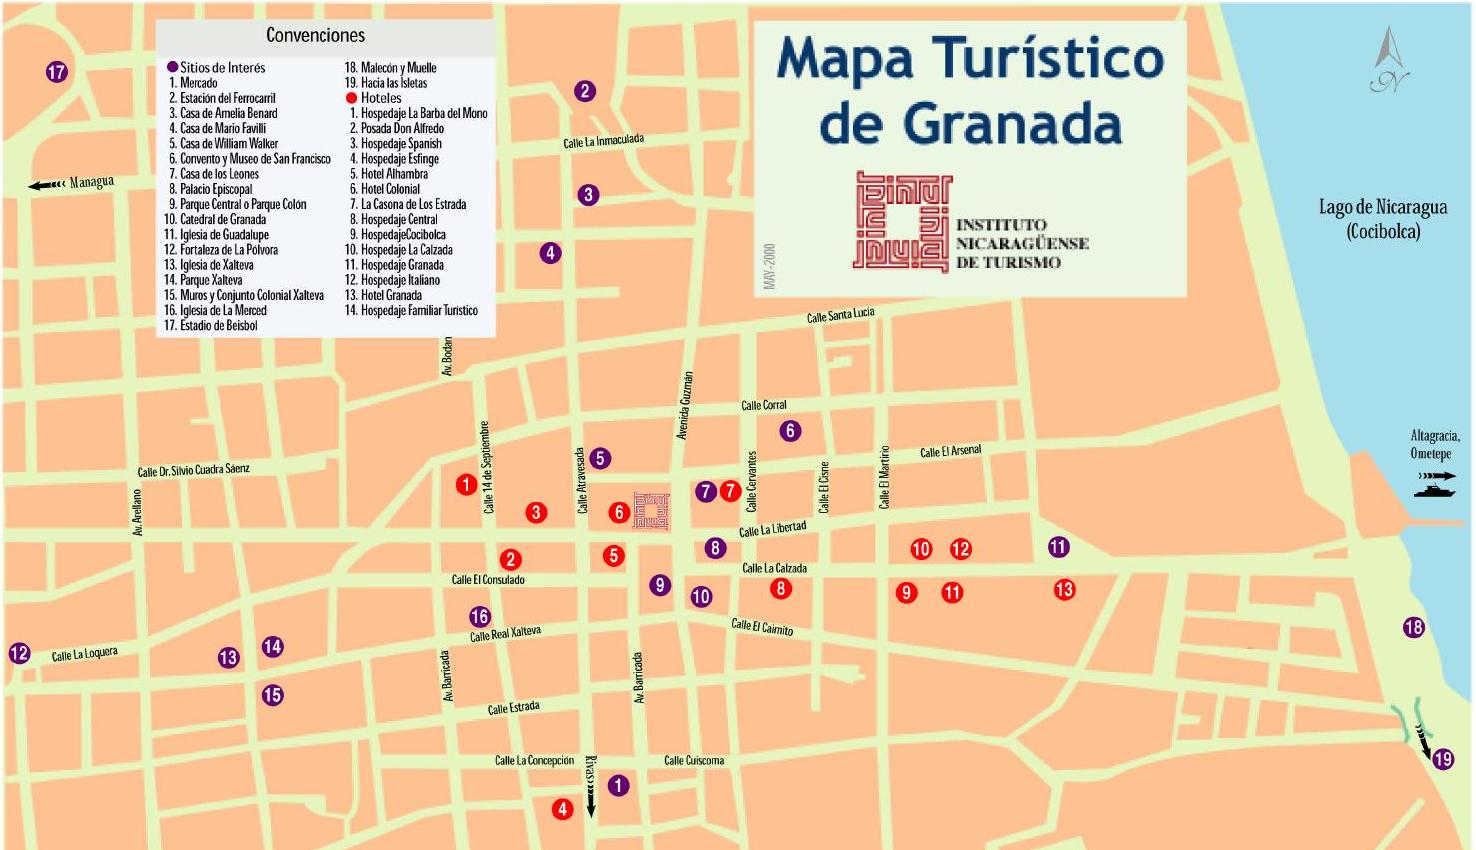 Mapa Turístico de Granada, Nicaragua